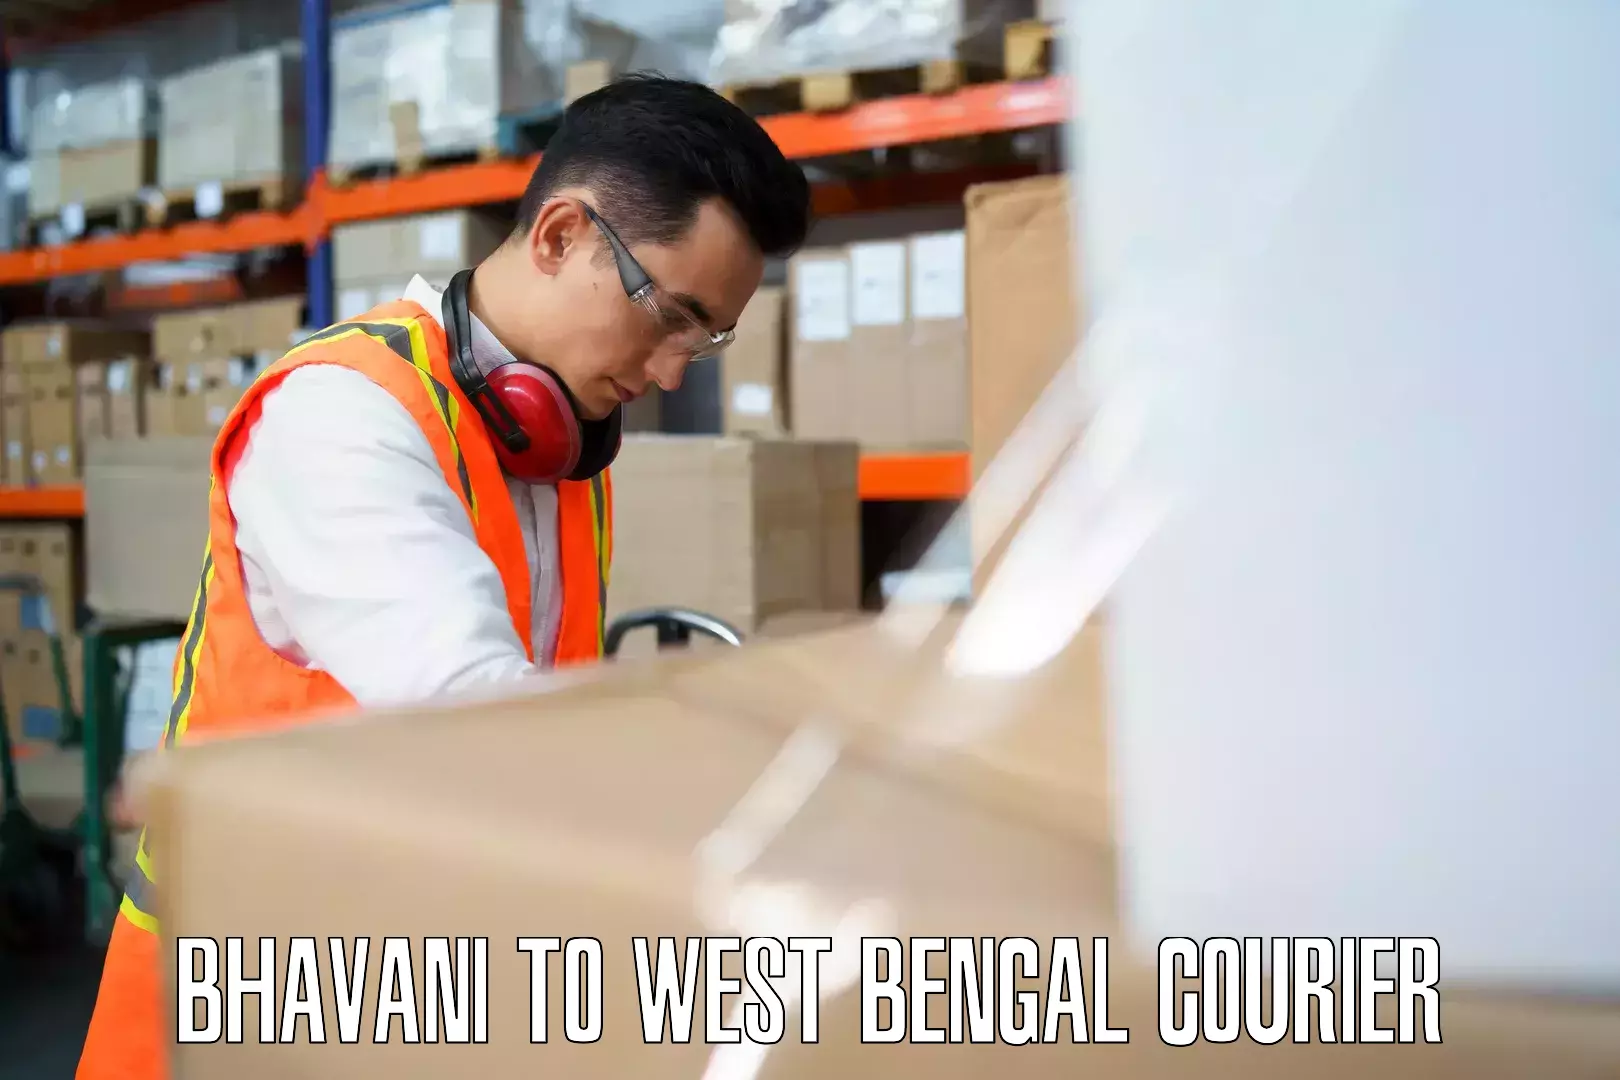 Luggage shipment specialists Bhavani to Bajkul